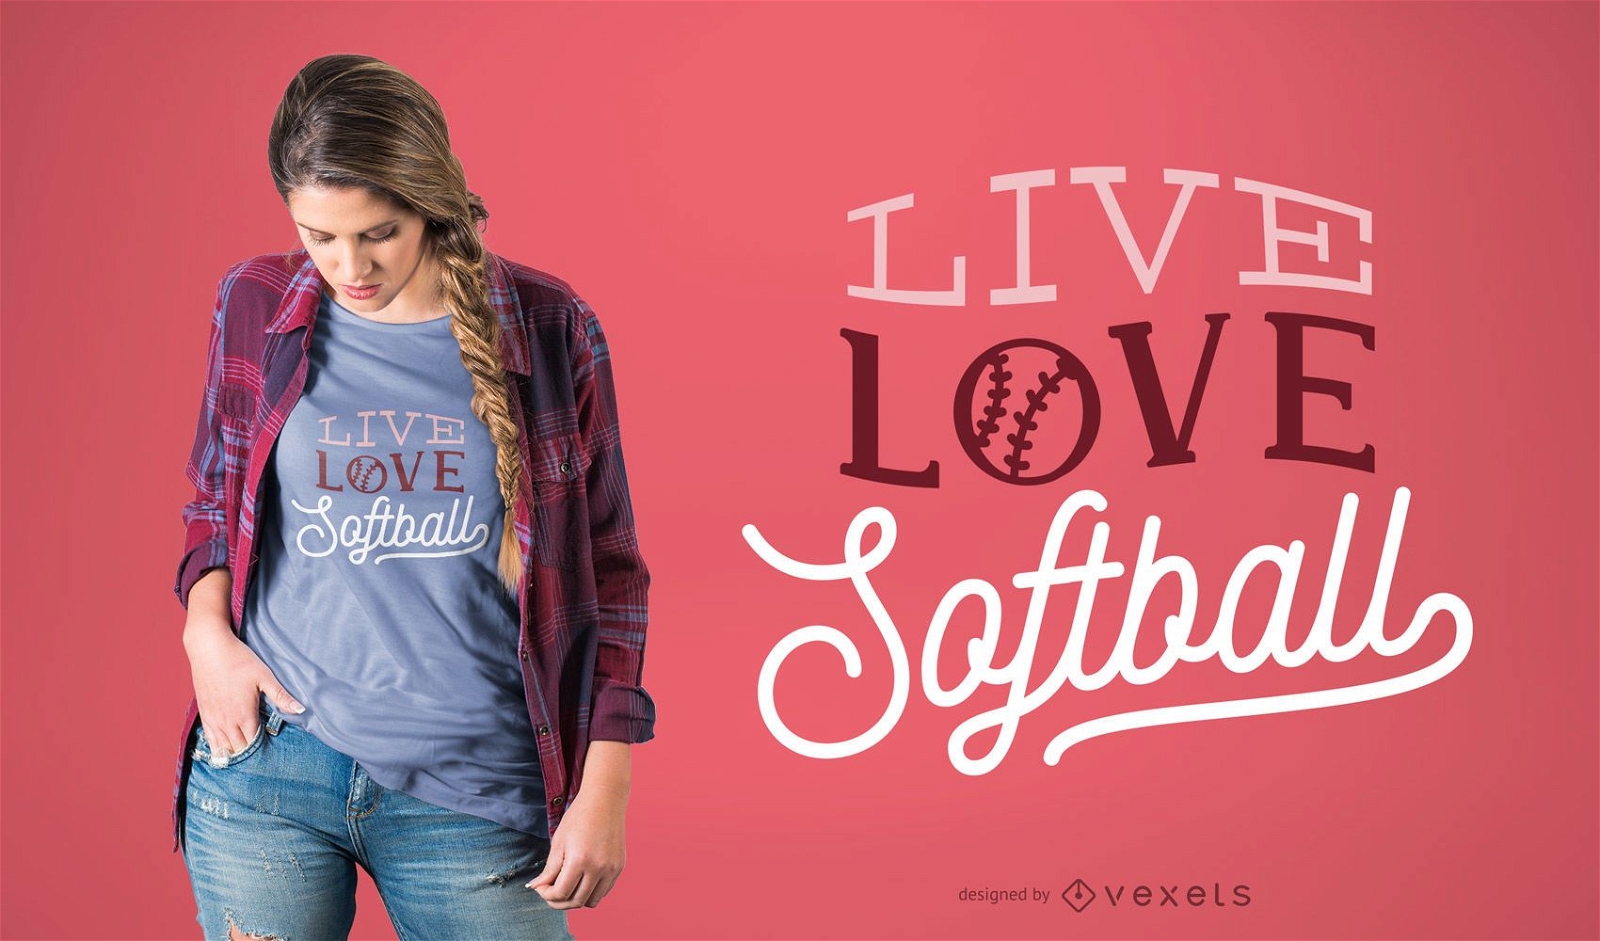 Dise?o de camiseta Live Love Softball